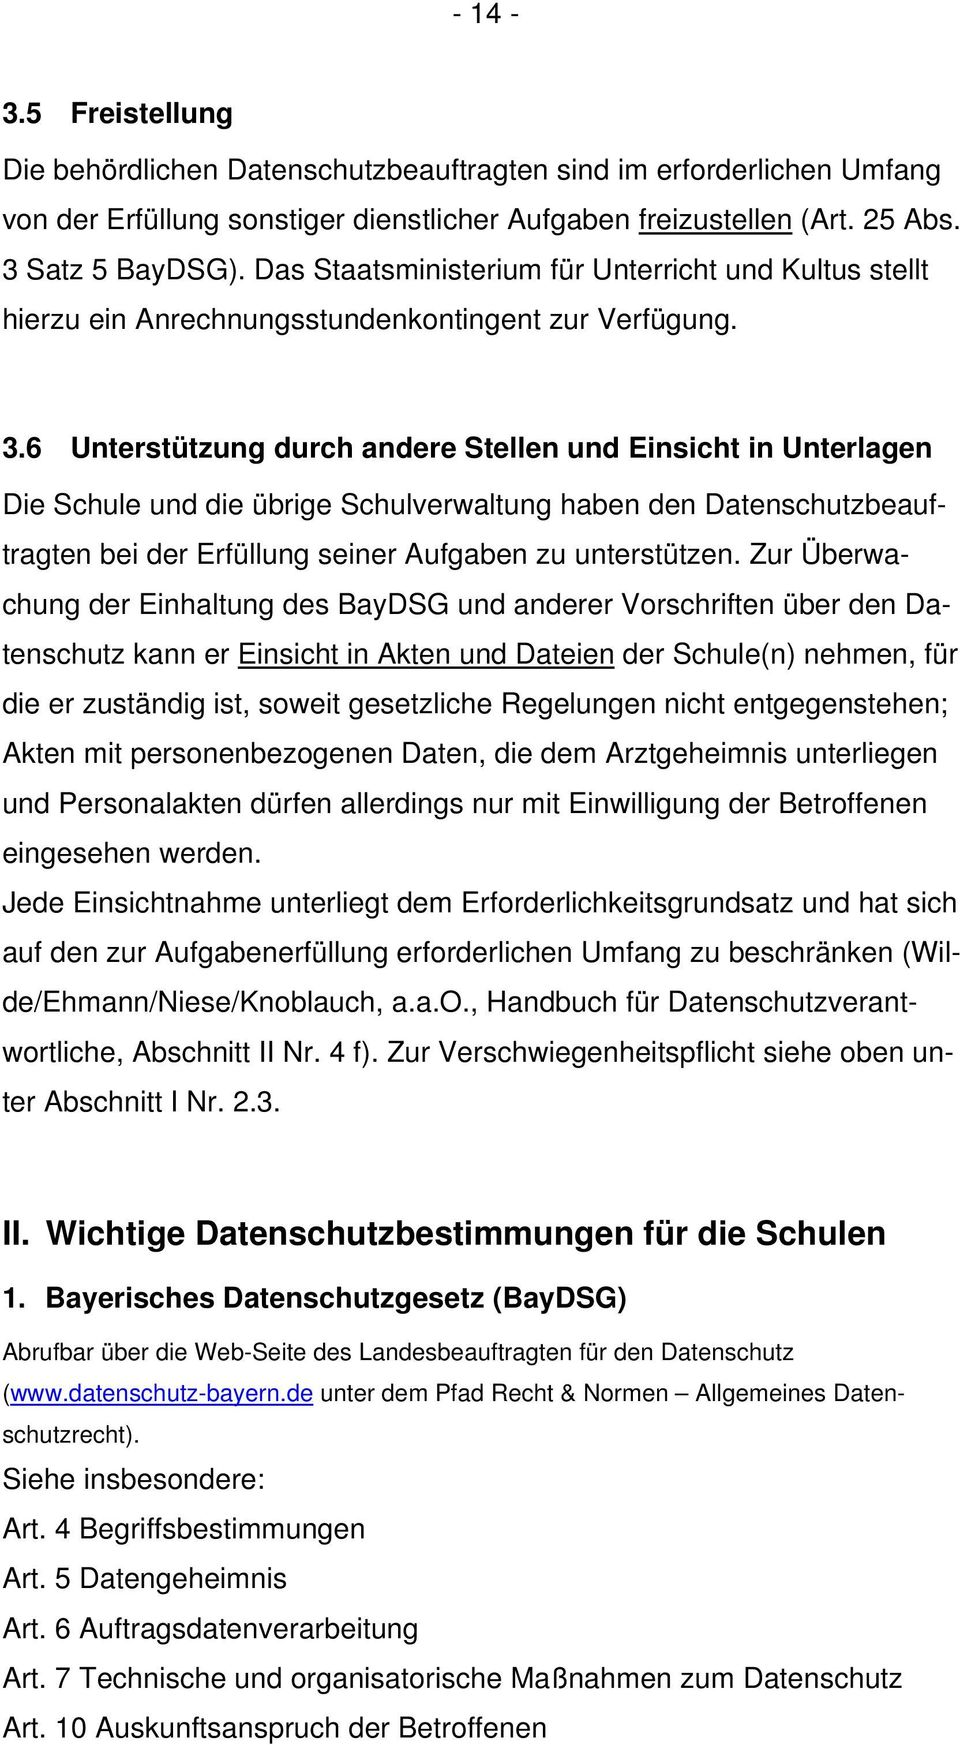 Handreichung Für Datenschutzbeauftragte An Bayerischen Staatlichen